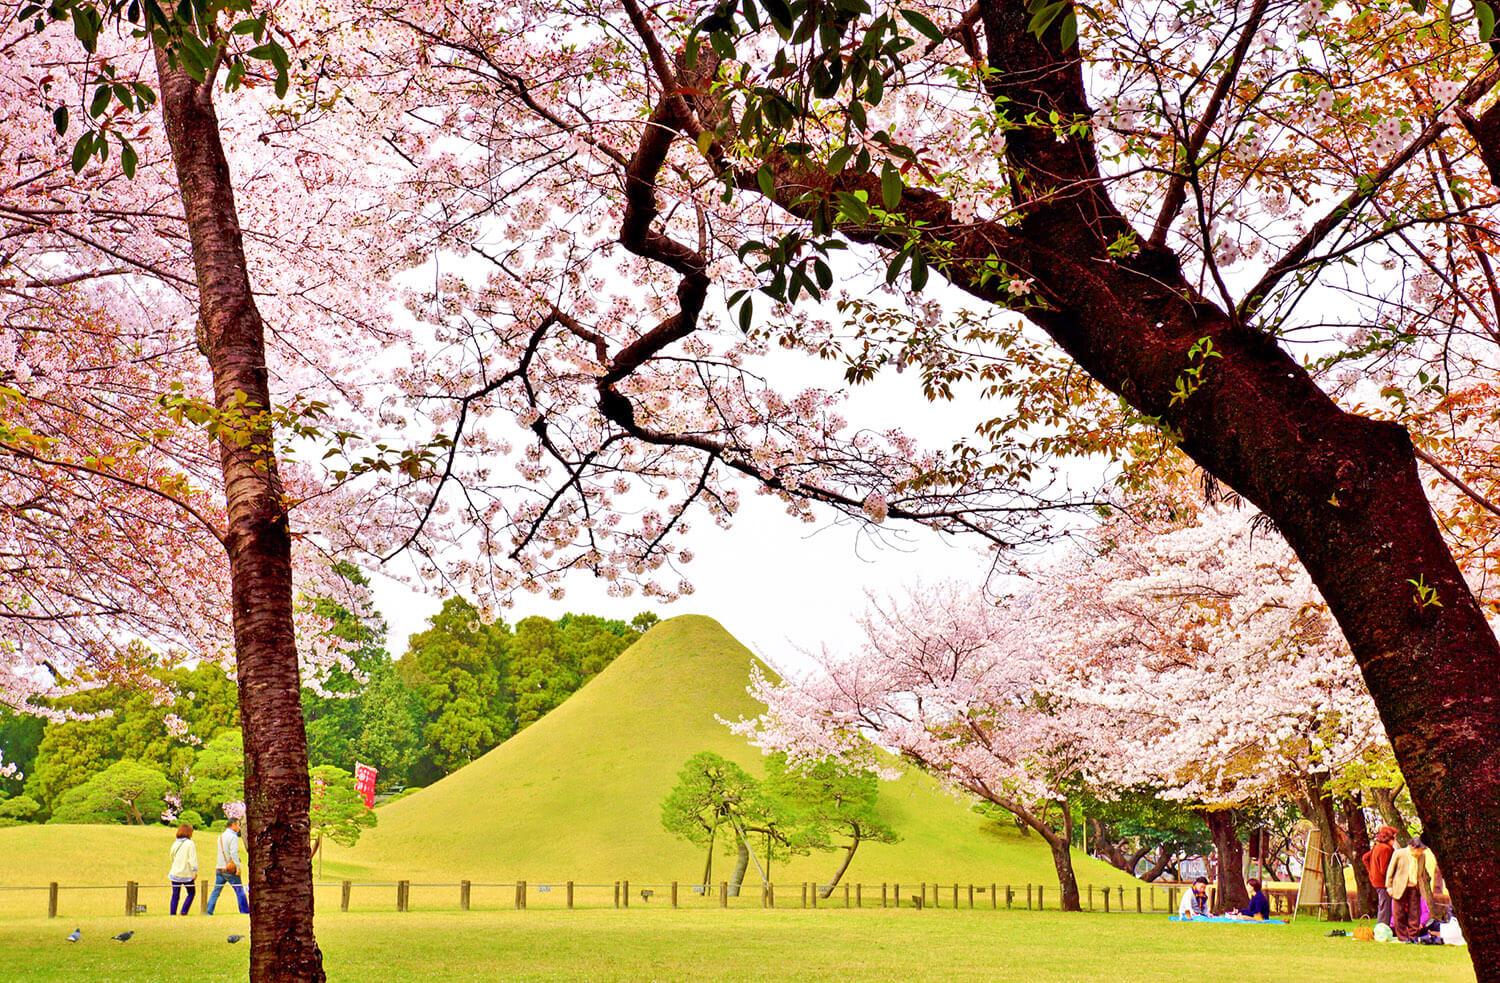 富士山に見立てられた築山の緑と桜のピンクのコントラストが美しい